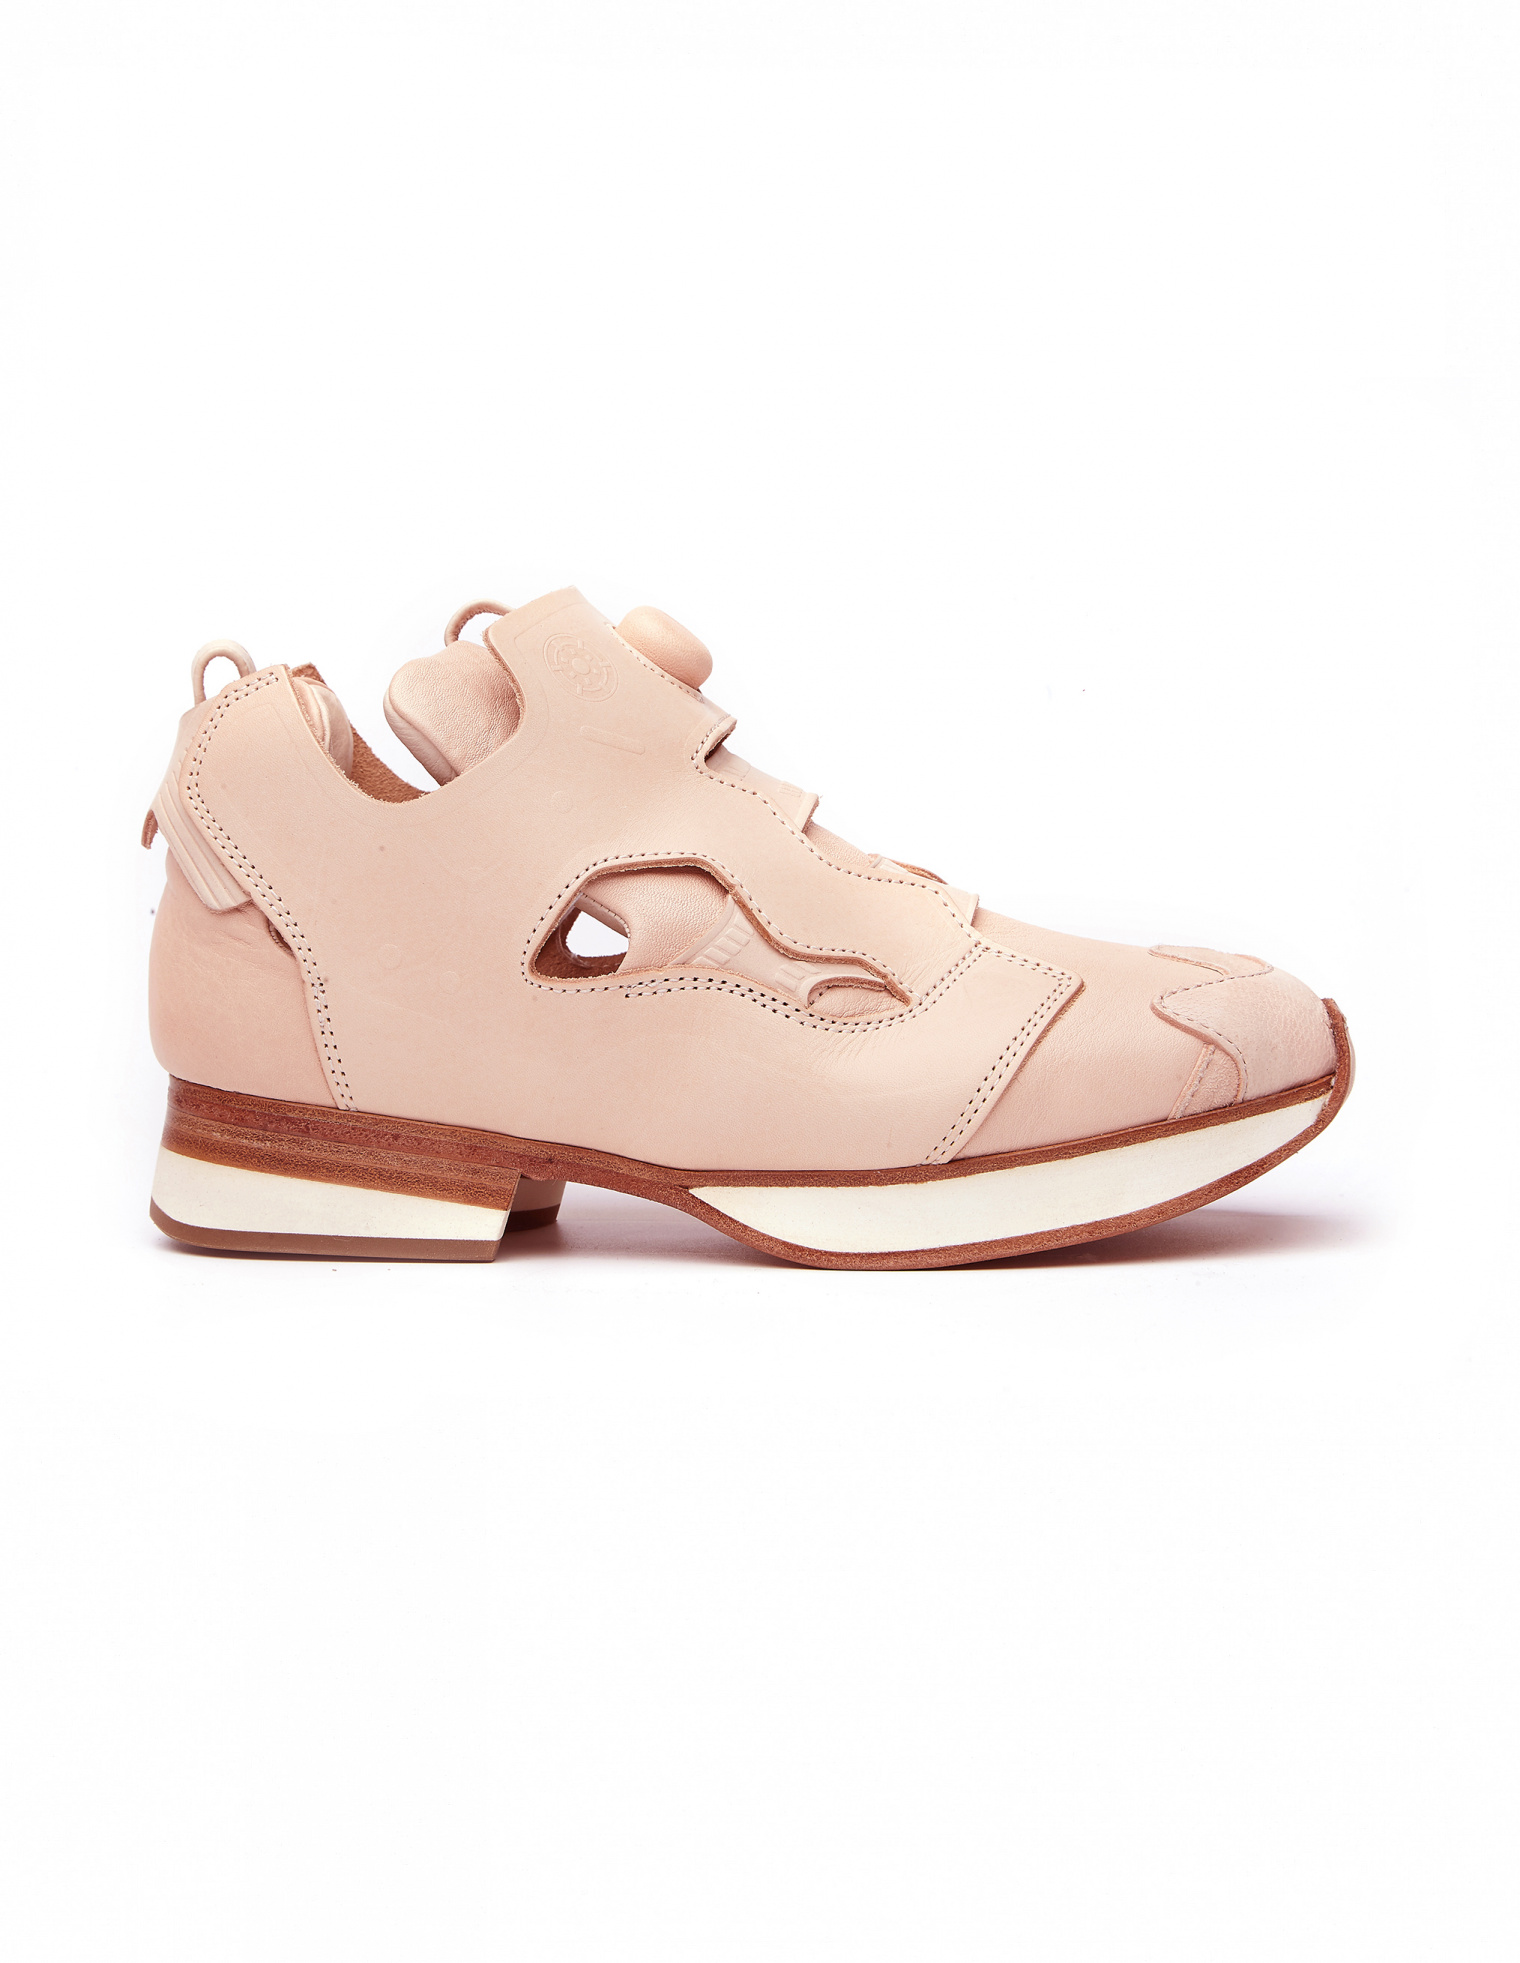 Hender scheme mip-15 スニーカー 靴 メンズ 特価ブログ